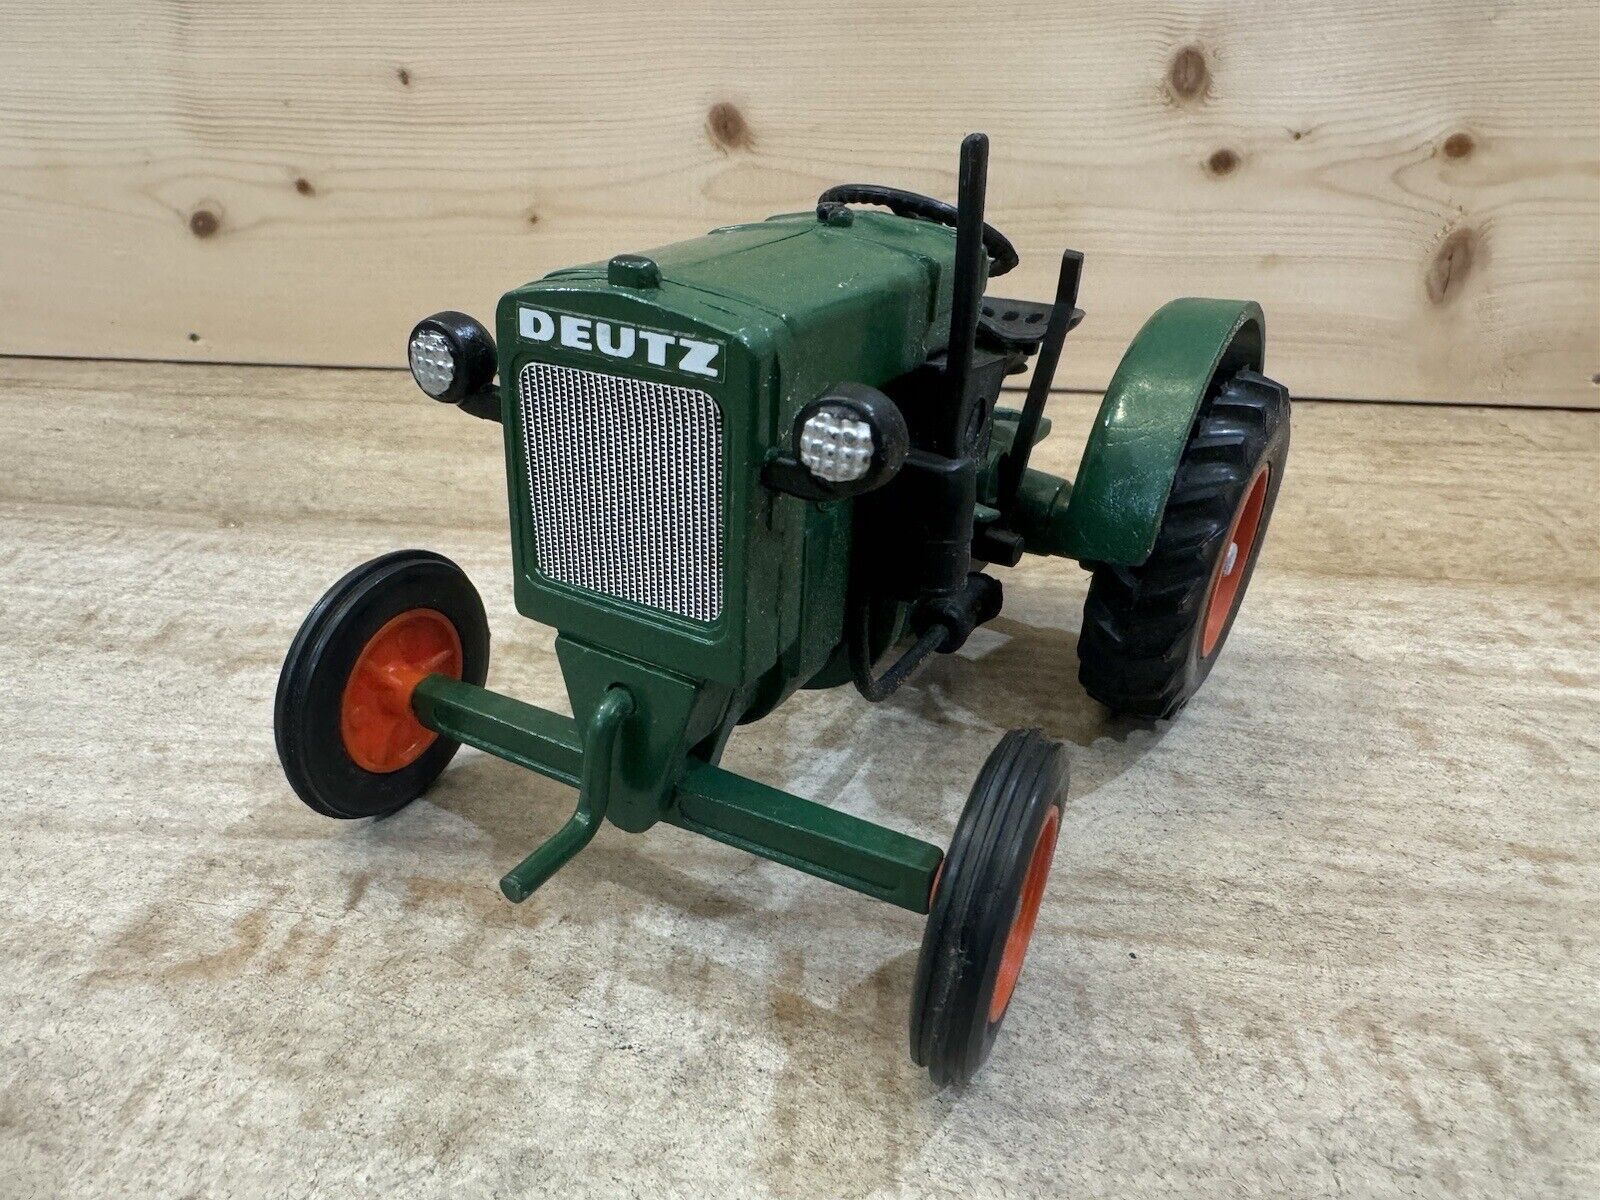 1936 Deutz Antique Tractor No 2 Farm Show Die cast model Collectible Rare 